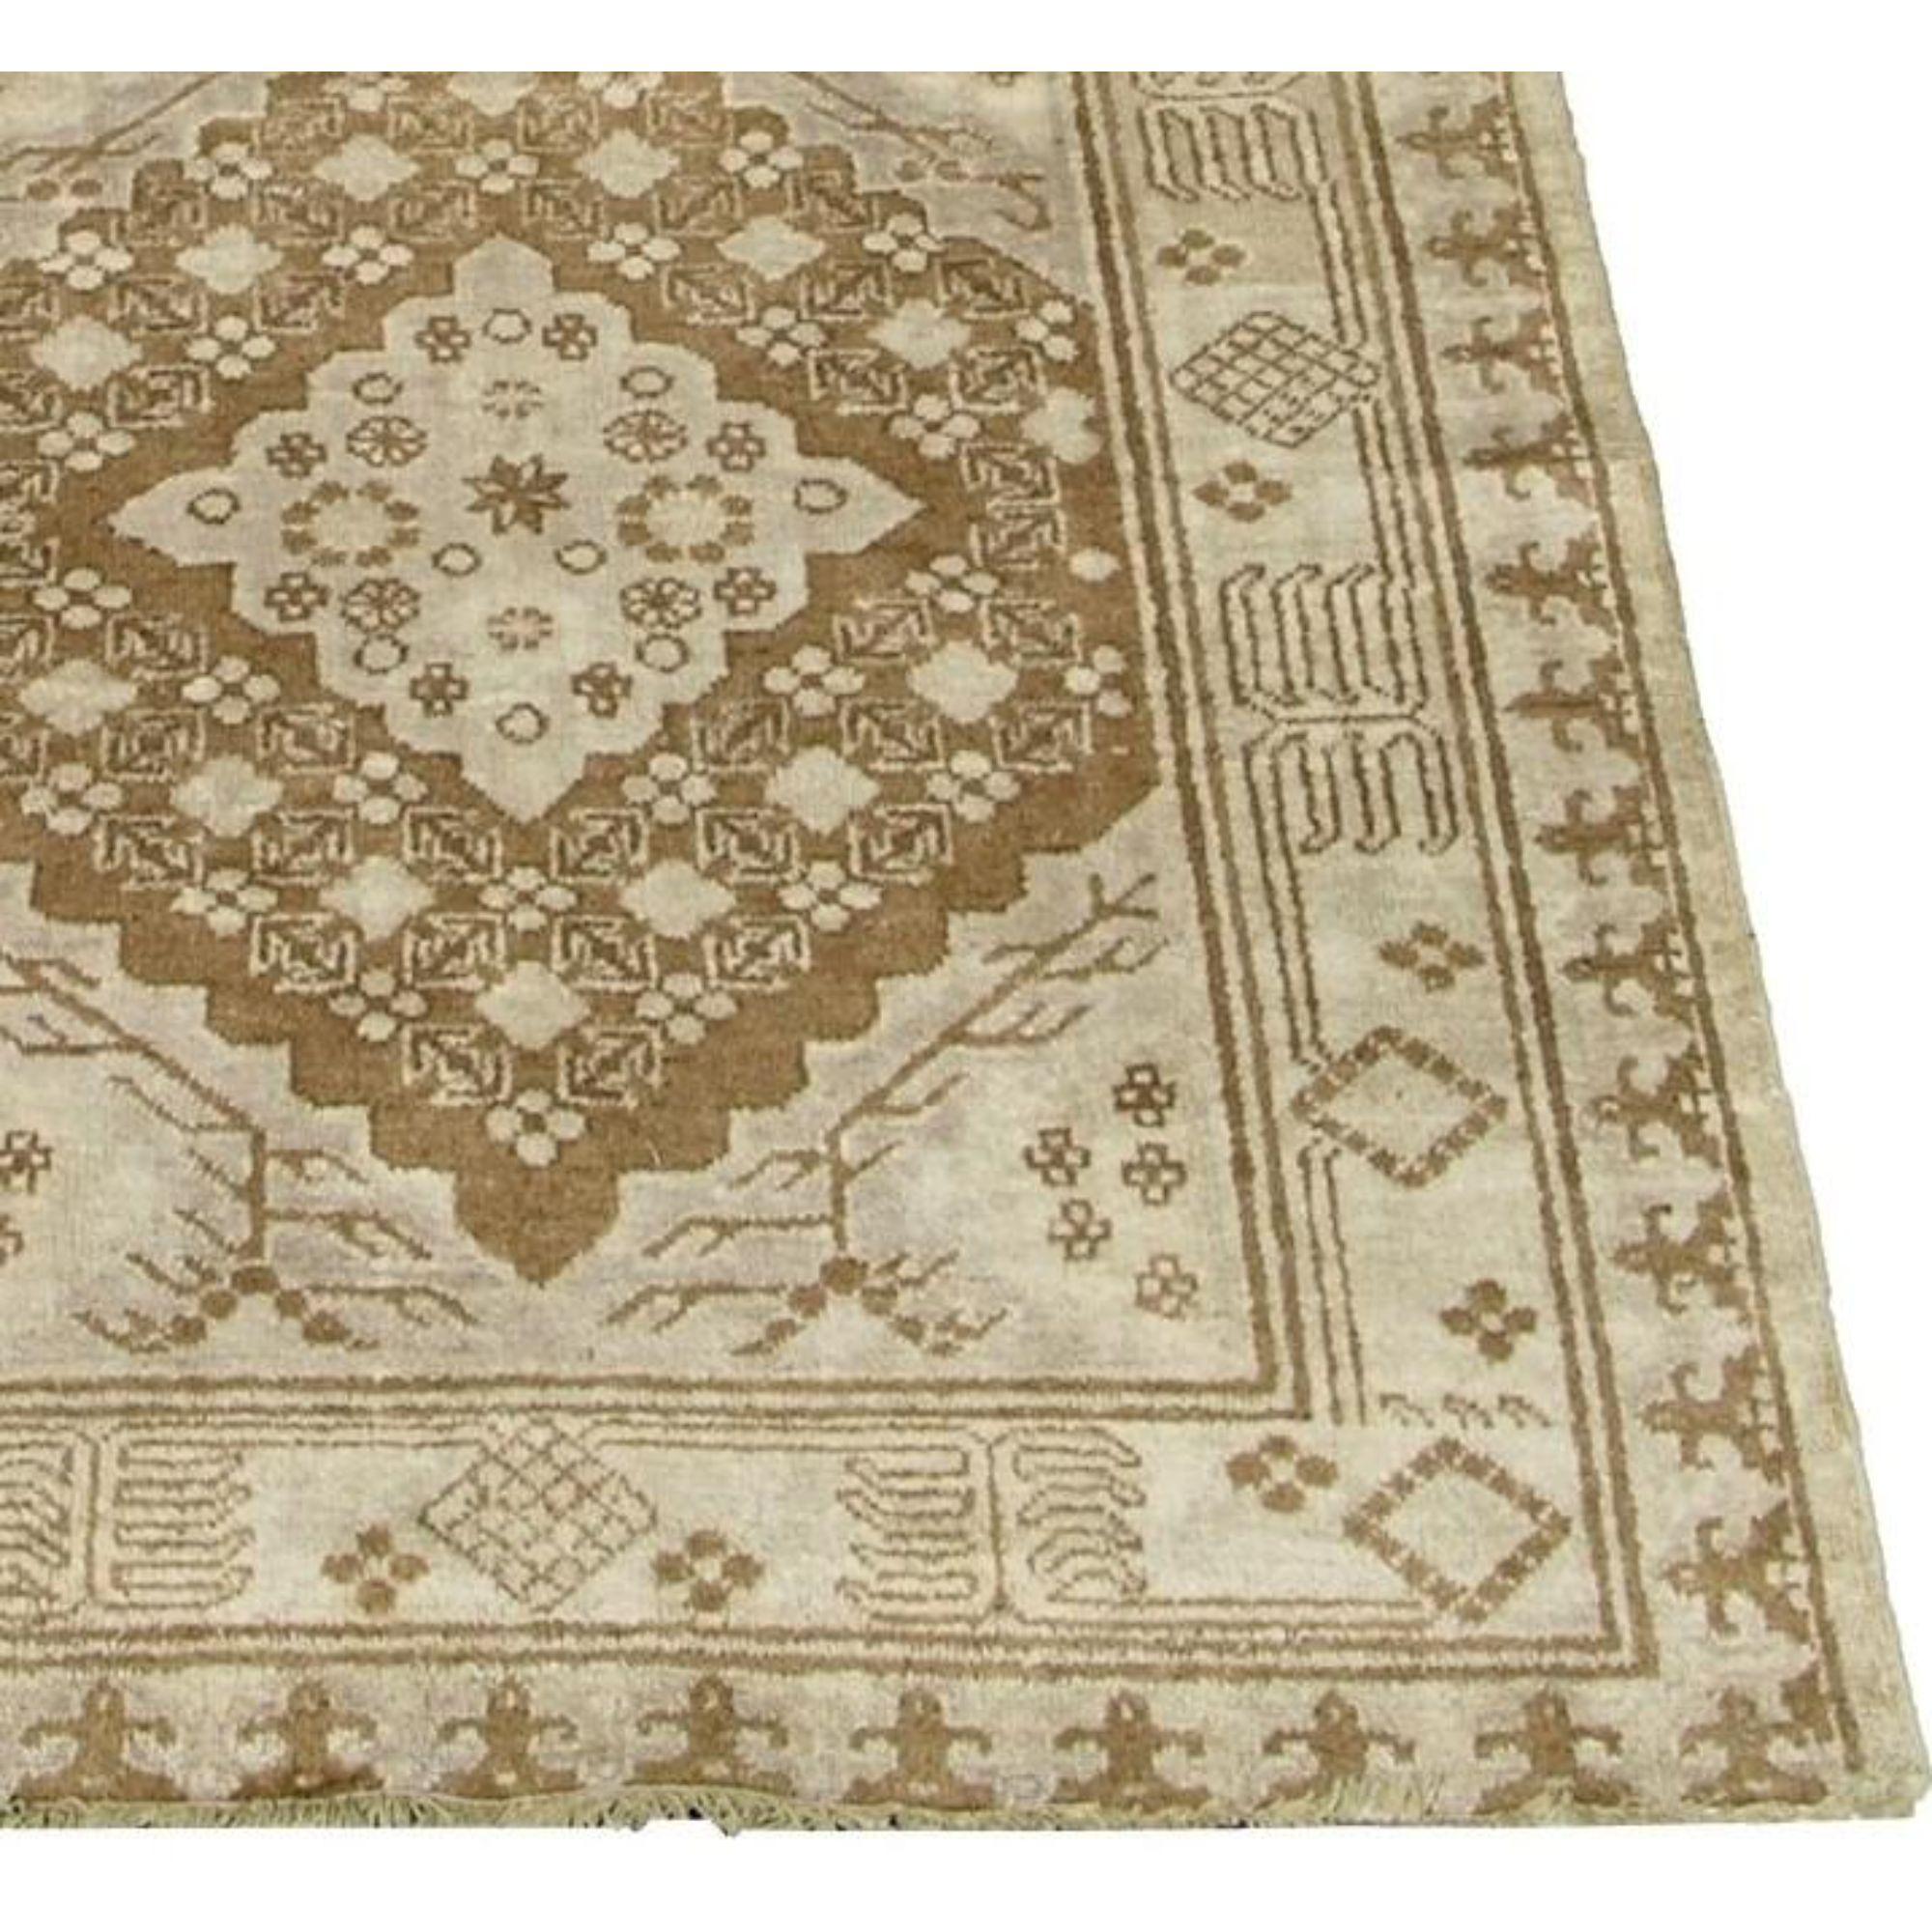 Up&Up est un ancien tapis ouzbek Khotan Samarkand des années 1900, tribal et traditionnel, laine sur coton.